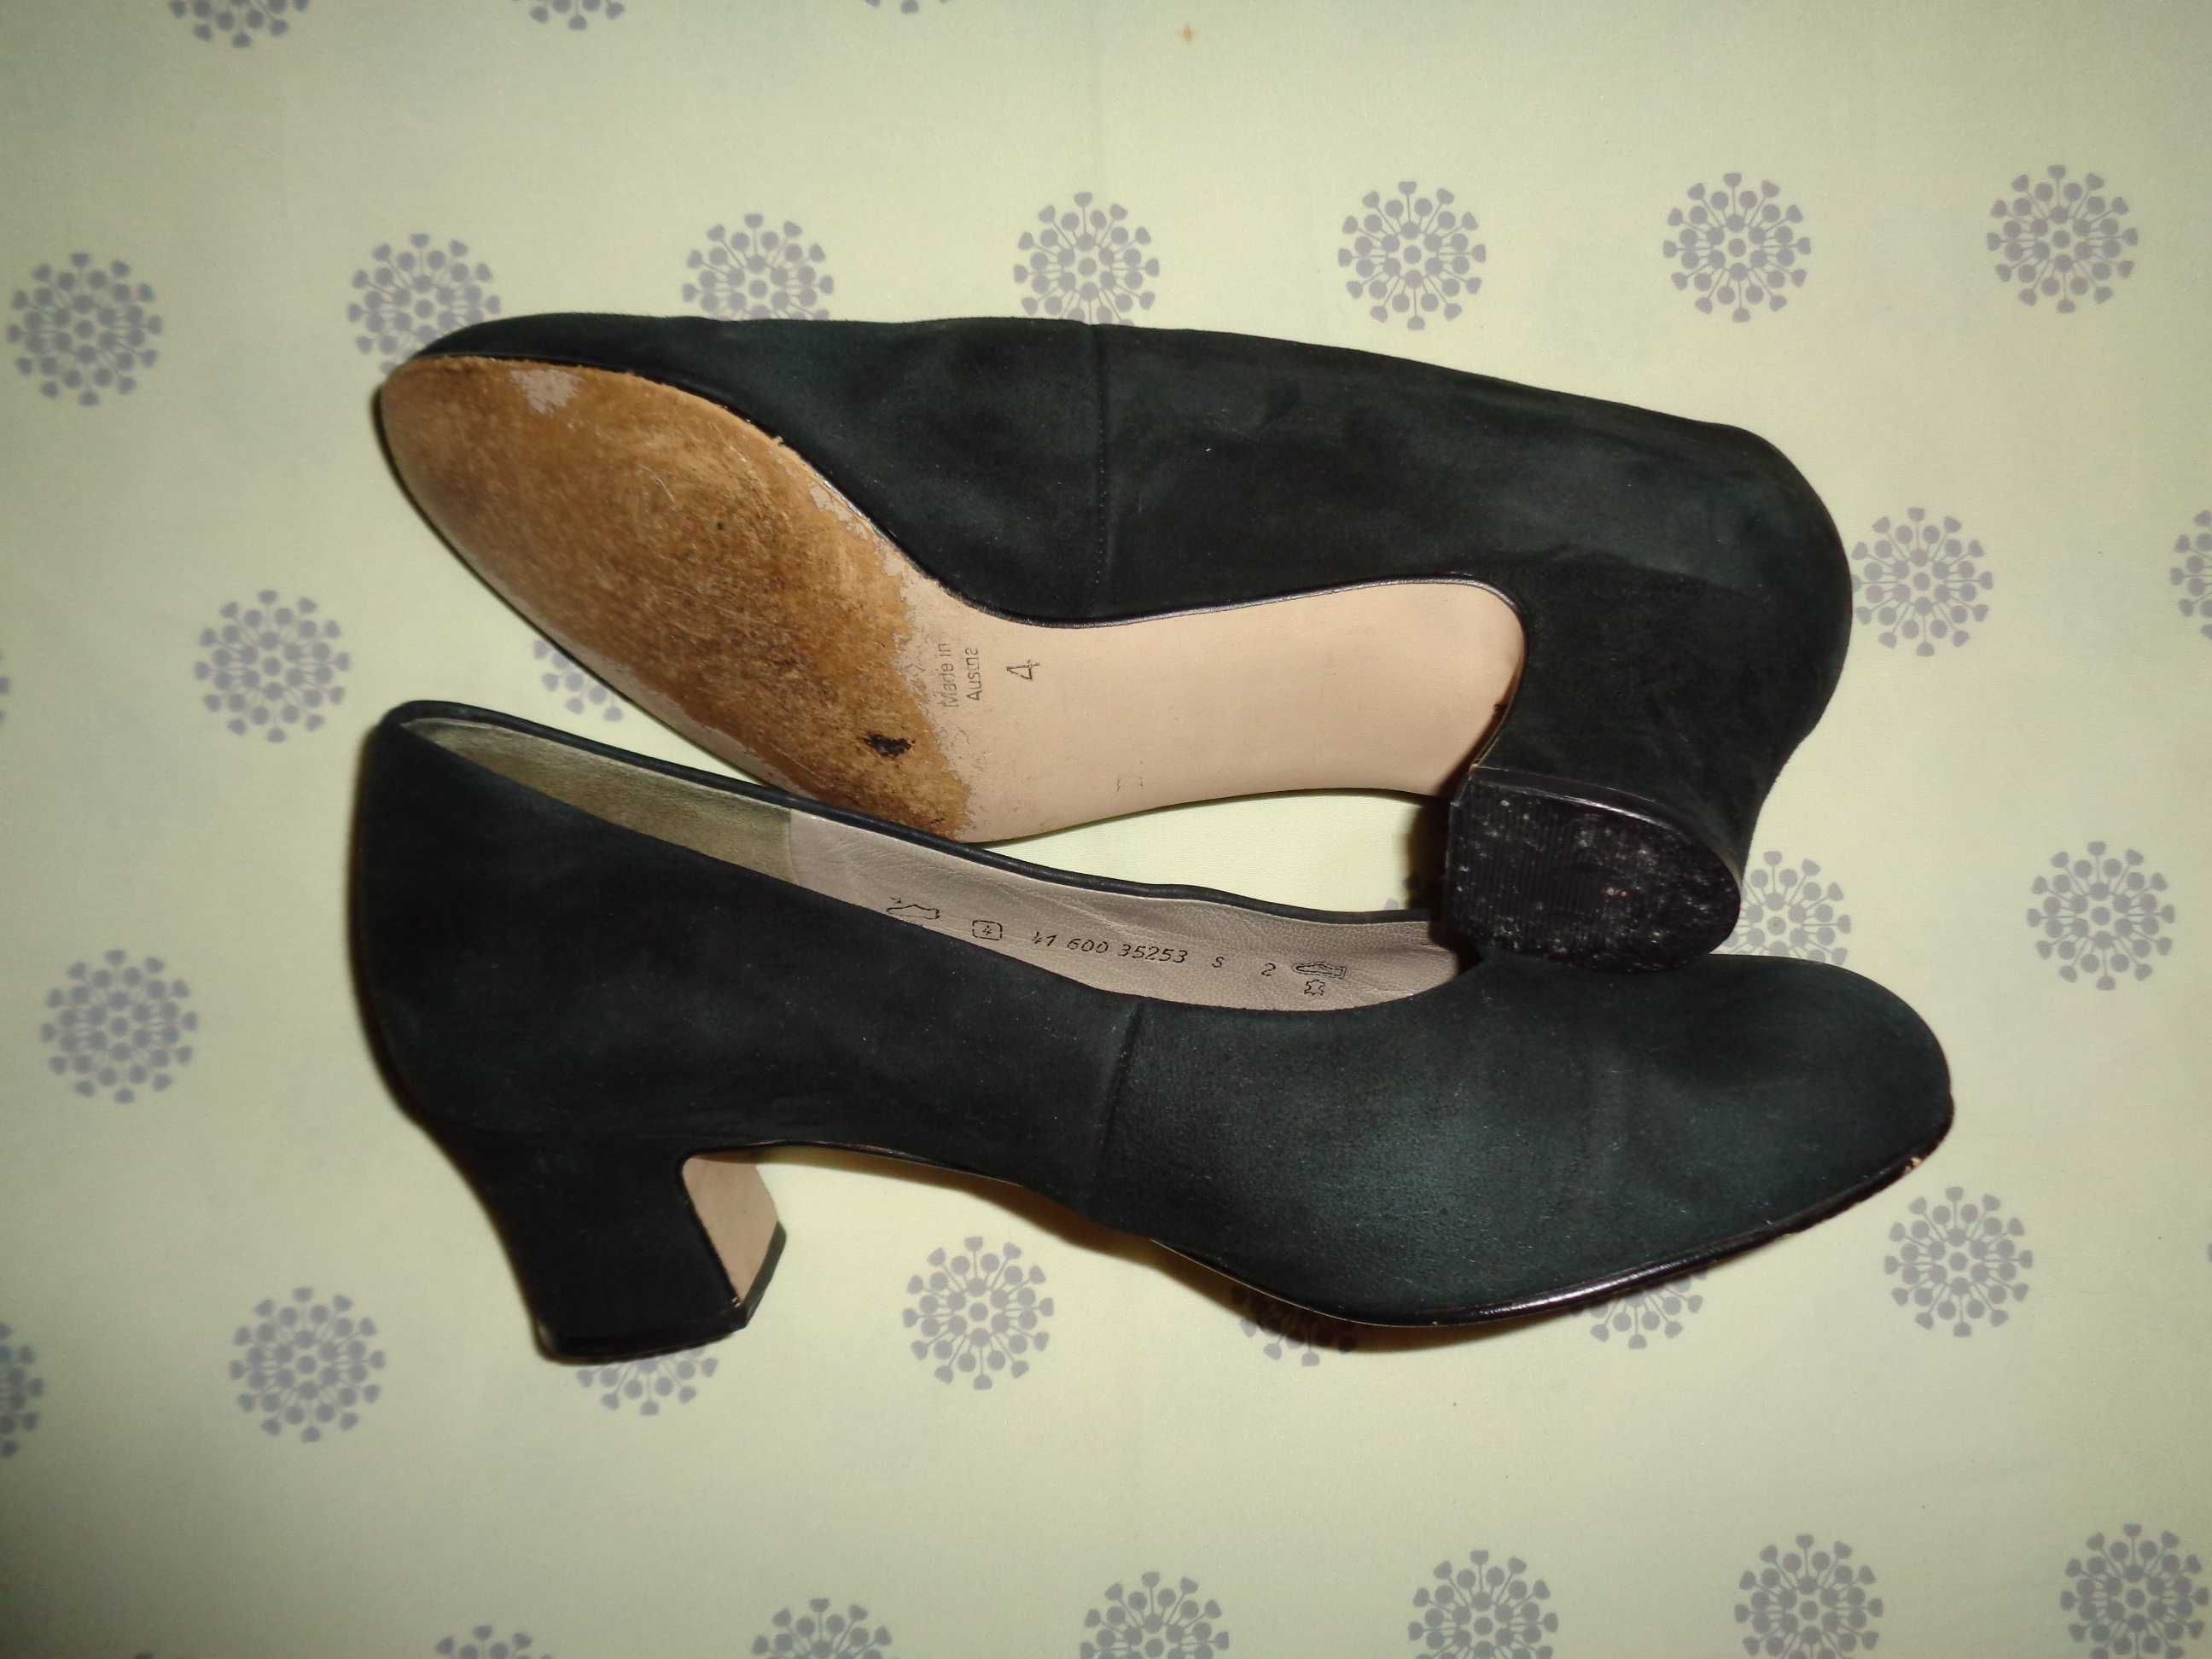 Pantofelki marki Gabor , czarny zamsz roz 37 wkładka 23 cm.